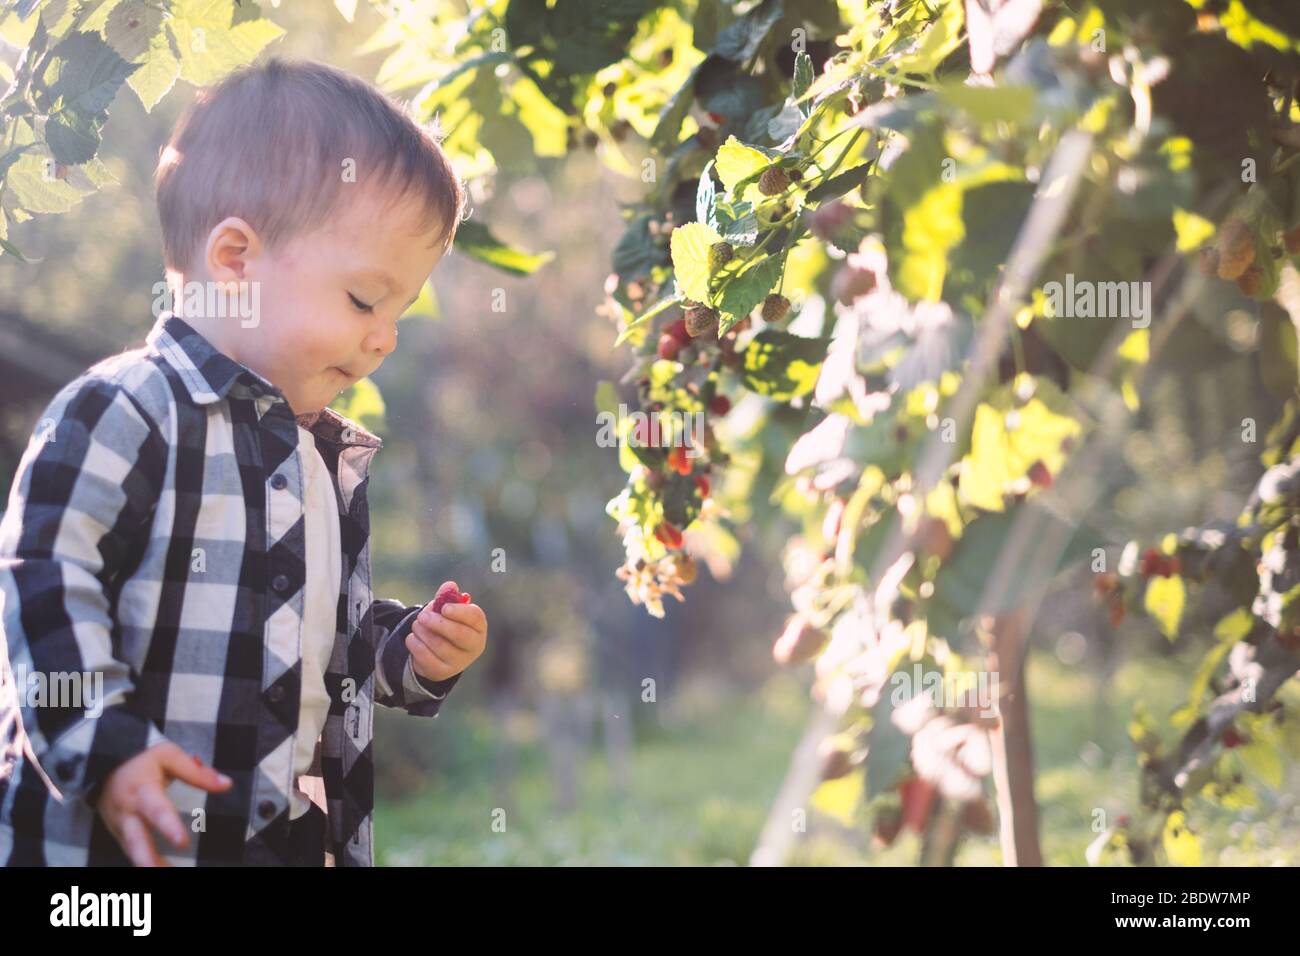 Kleiner Junge, der Himbeere im karierten Hemd im Herbstgarten isst Stockfoto